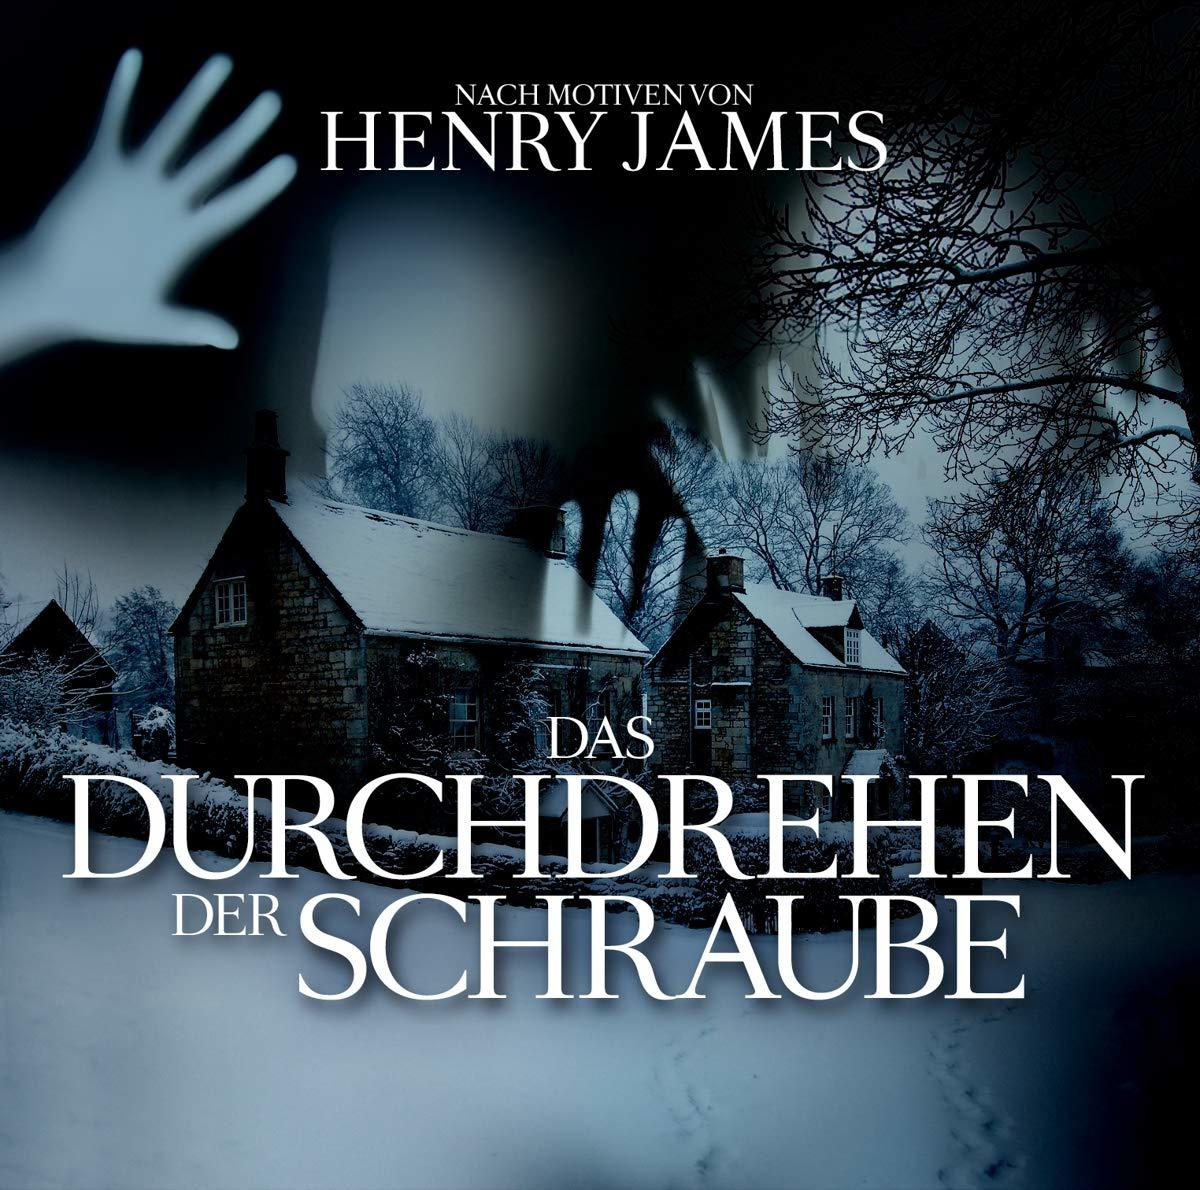 James,Henry-Eftekhari,O.P.-Tippner,T. - Das Durchdrehen (CD) der - Schraube